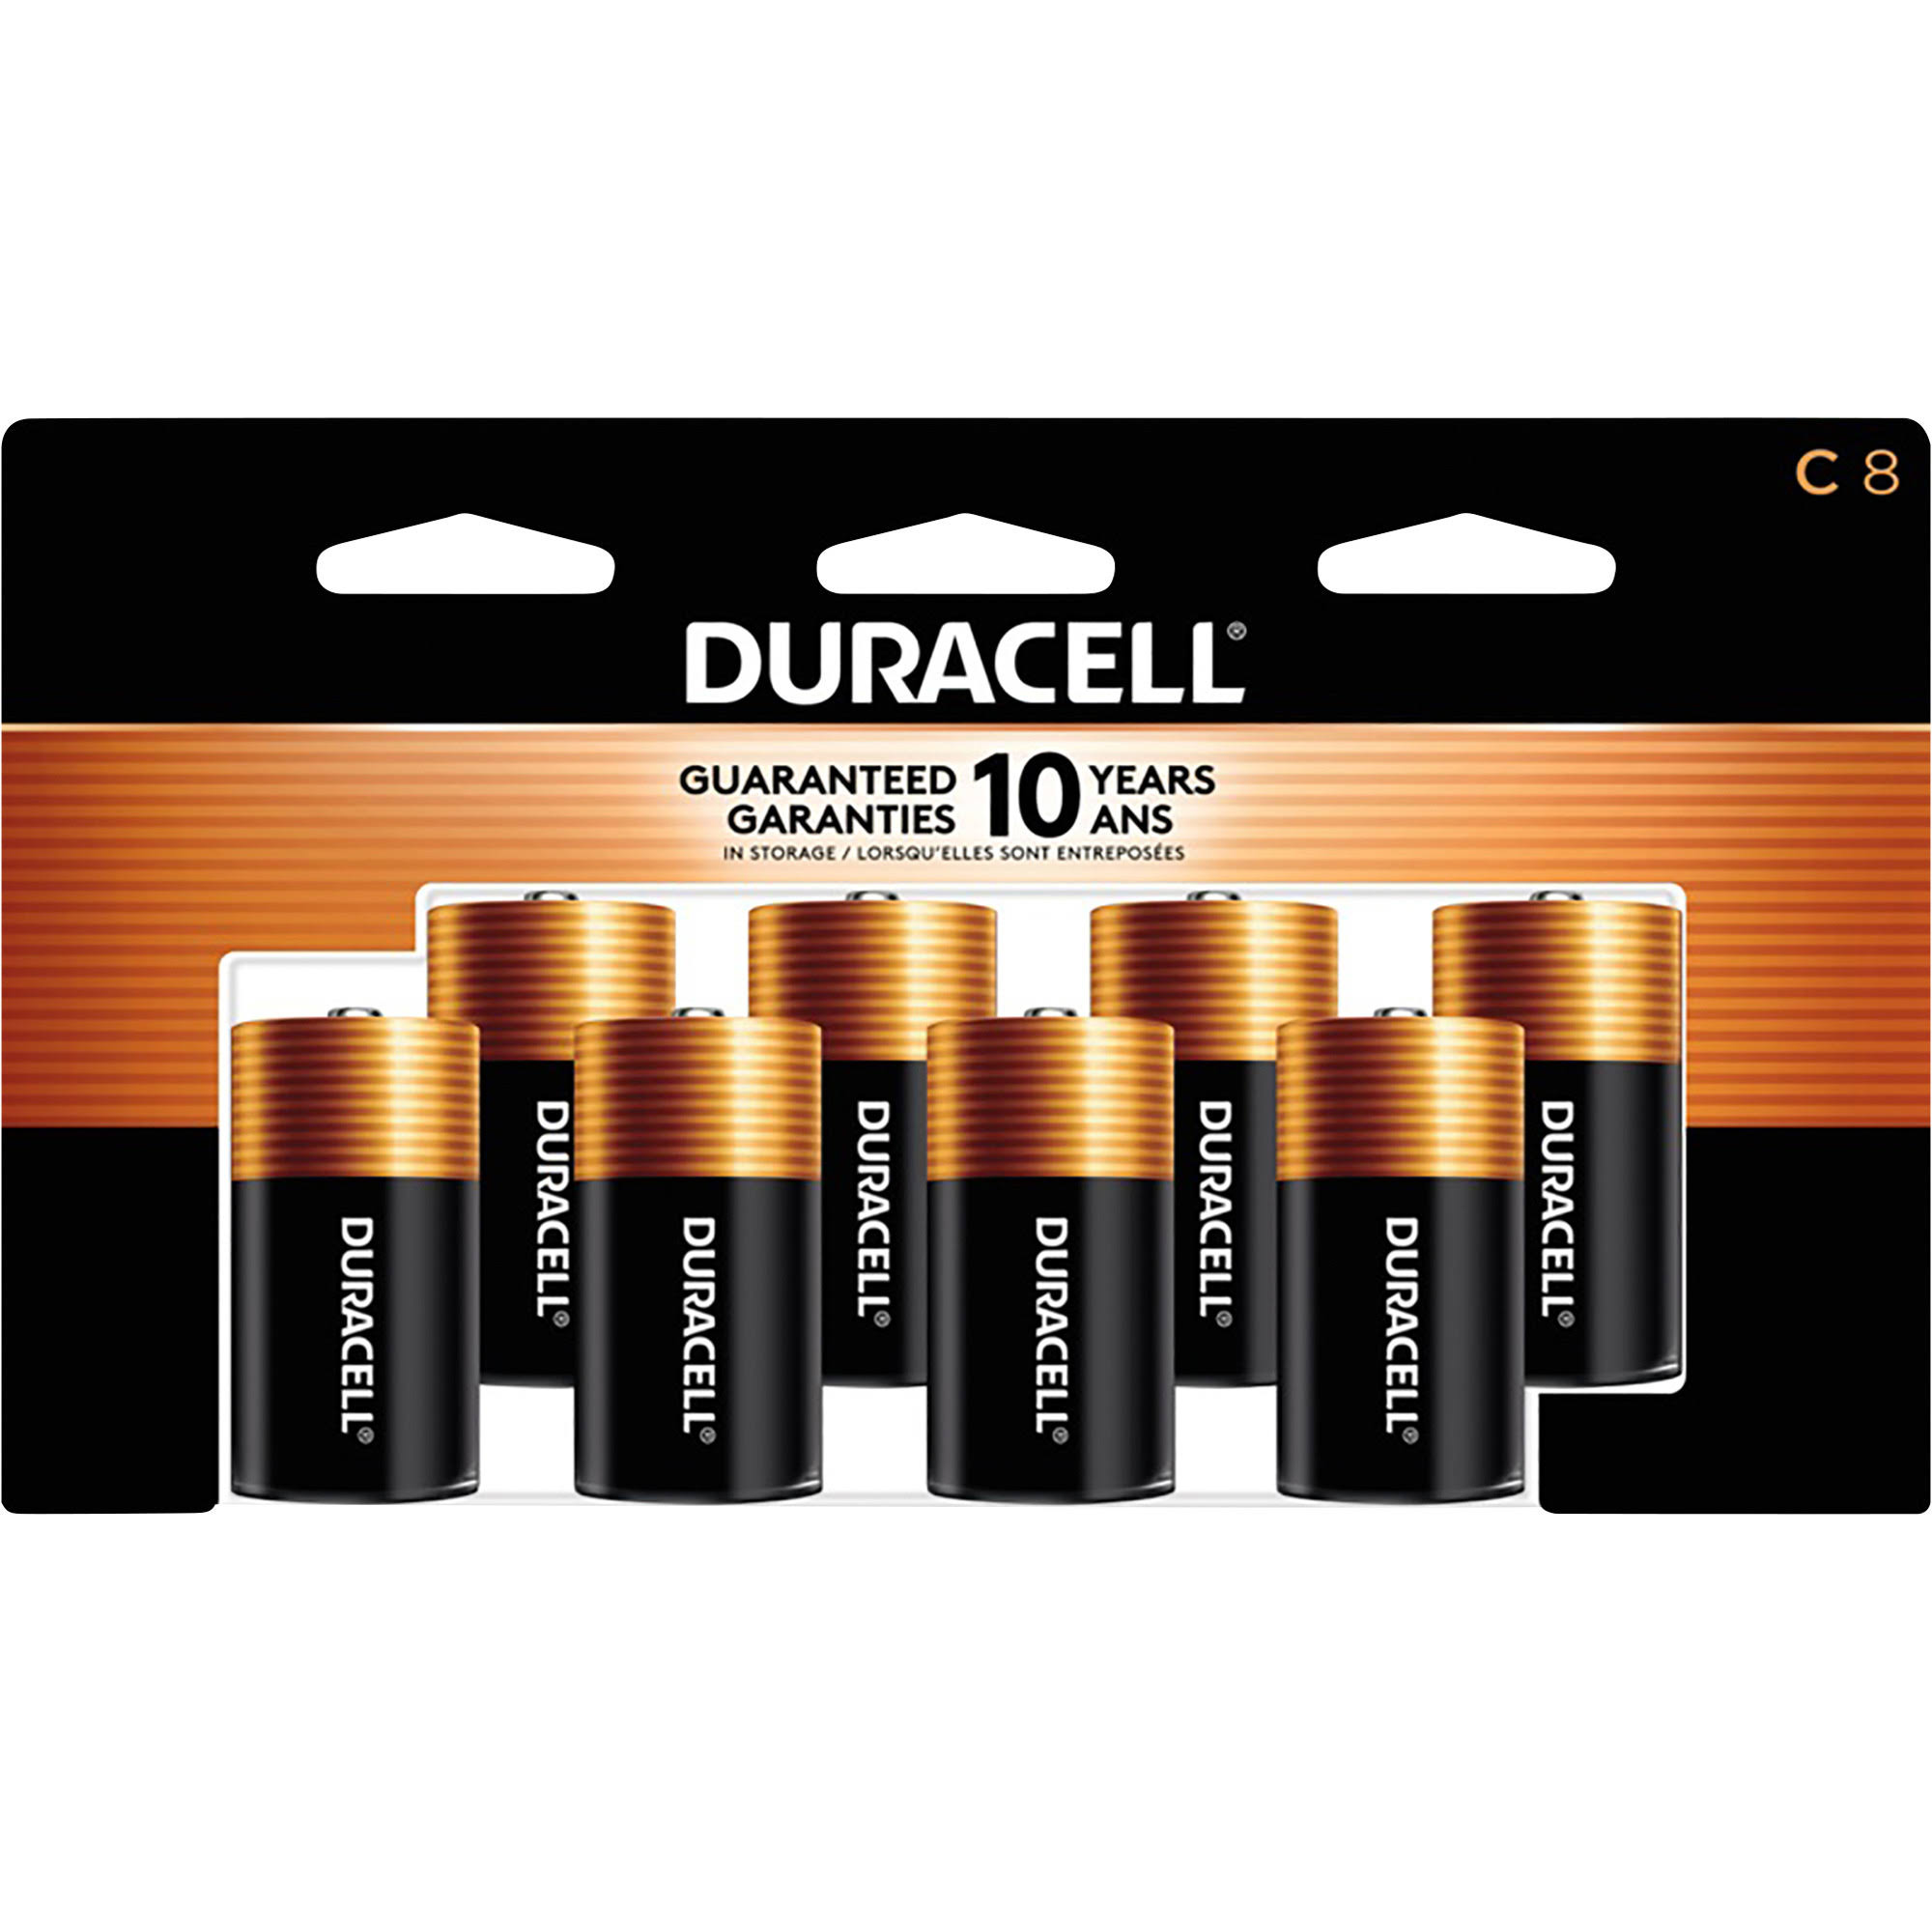 Duracell Coppertop C Batteries - 8 Batteries